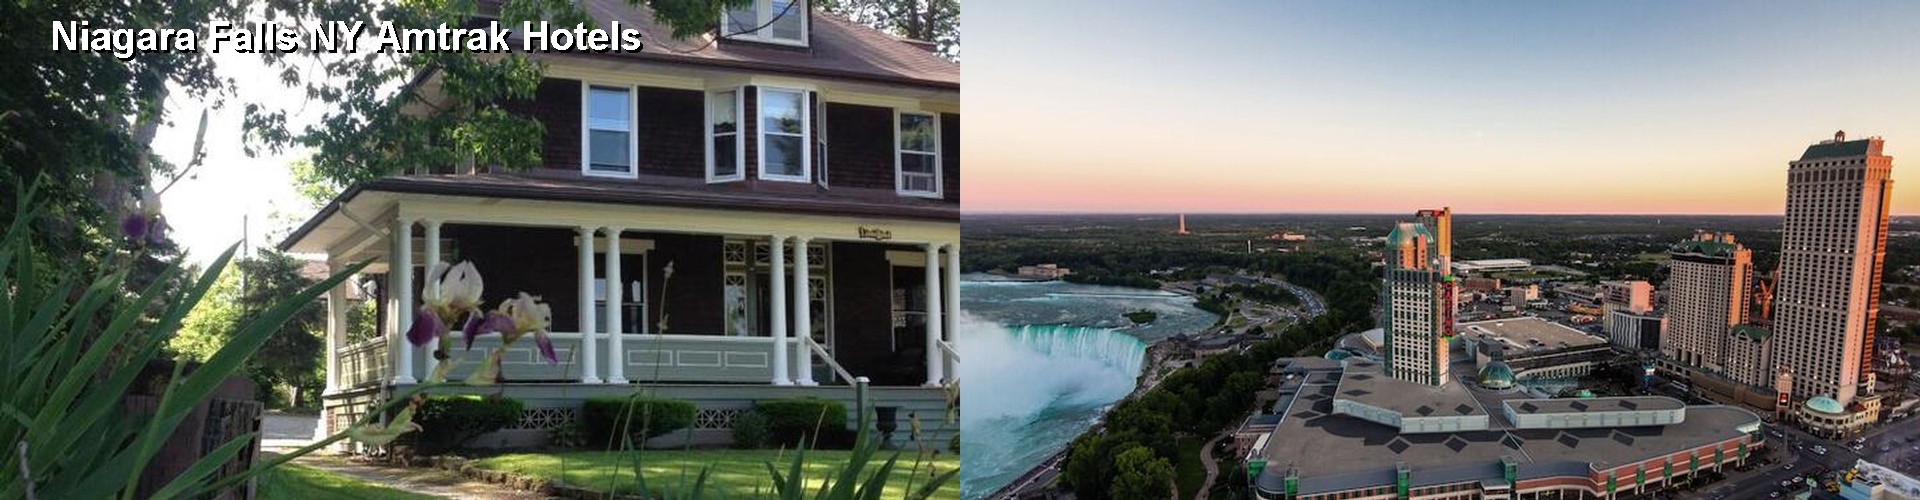 5 Best Hotels near Niagara Falls NY Amtrak